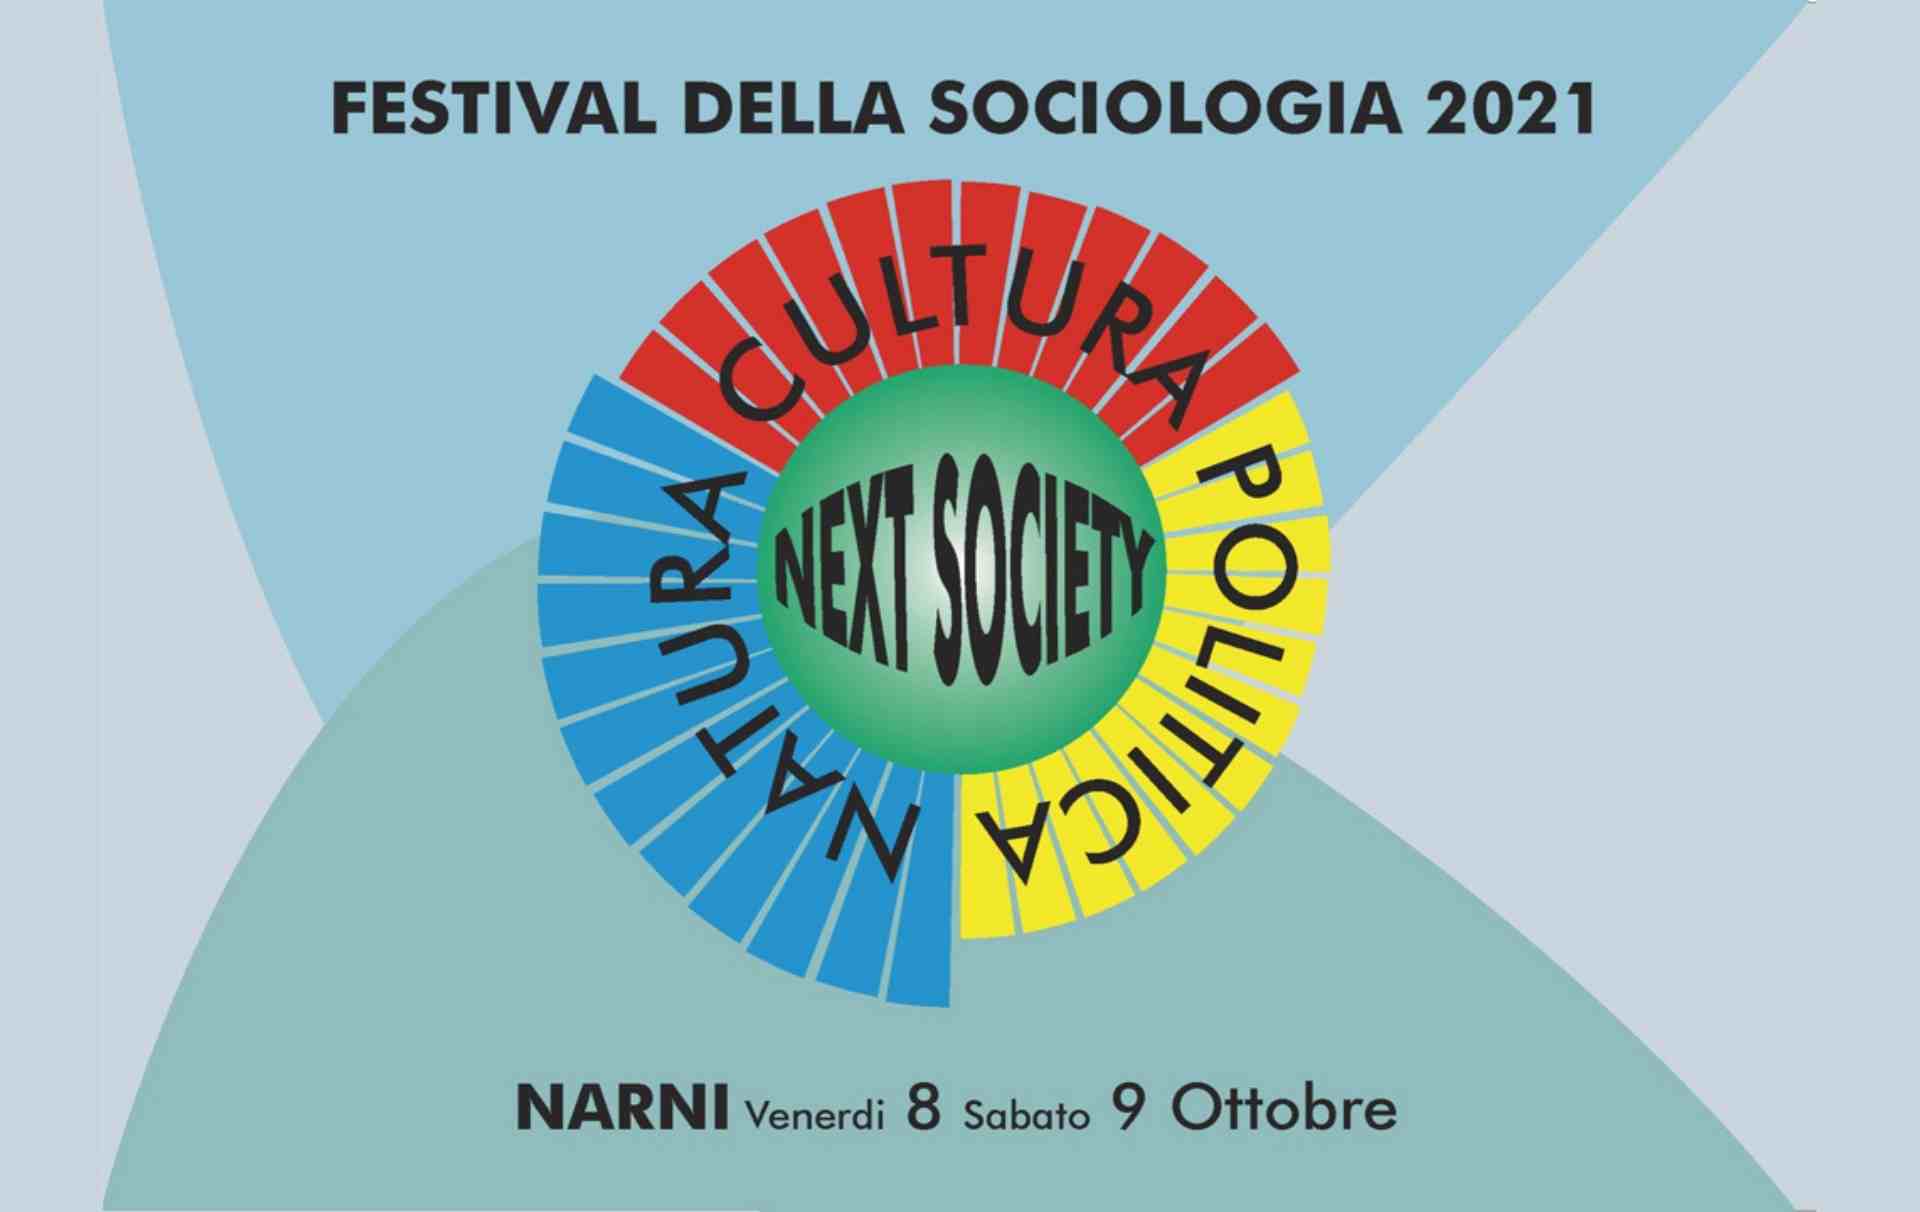 Cartellone del Festival della Sociologia 2021 a Narni